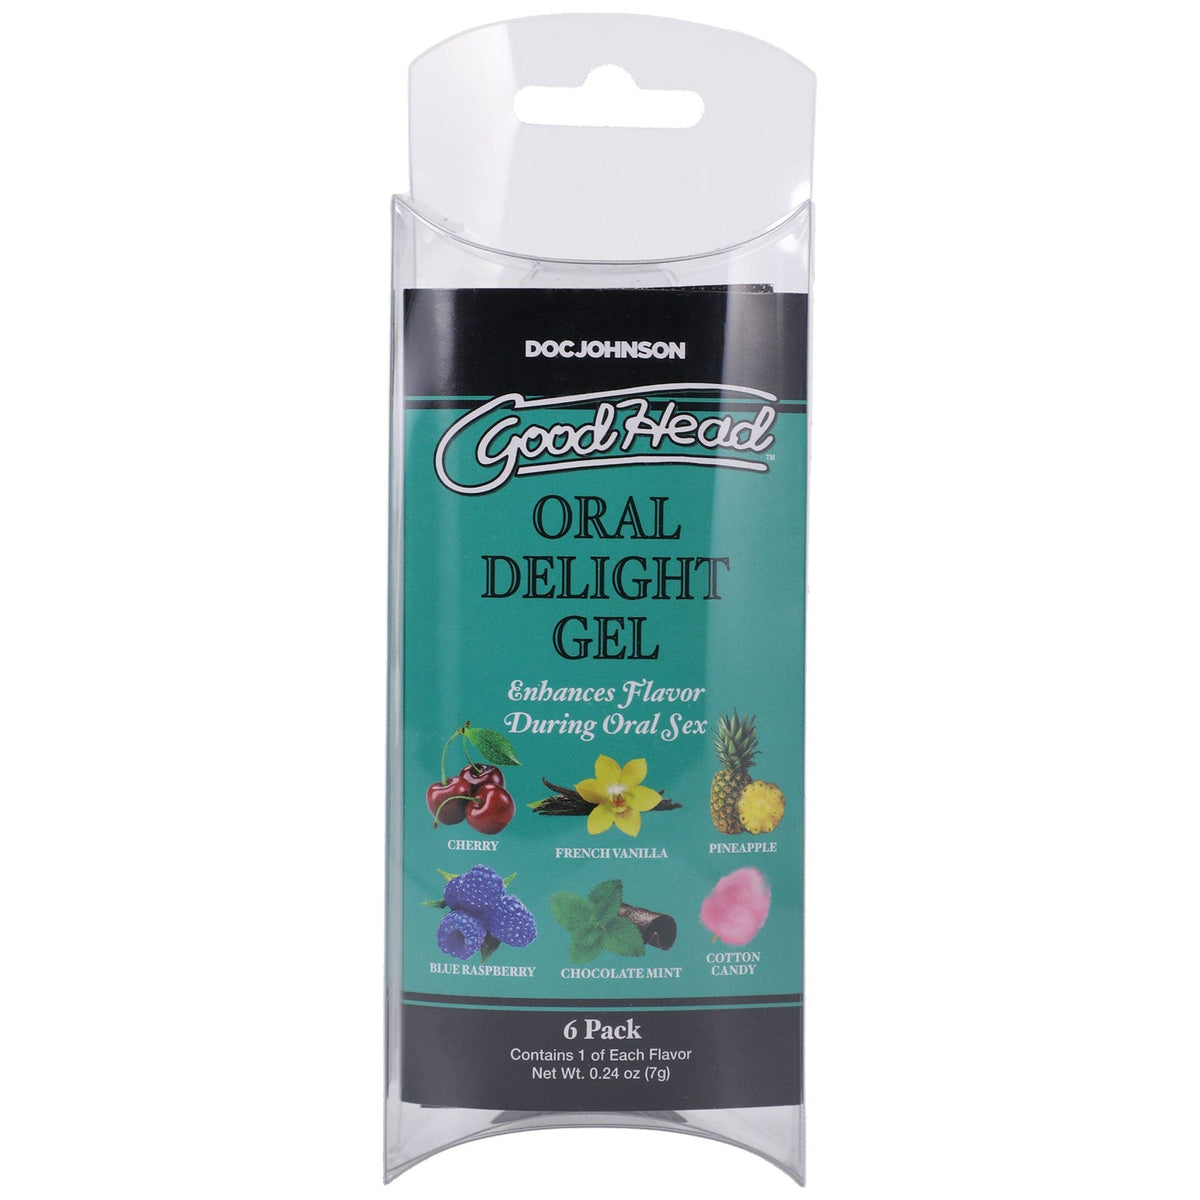 goodhead oral delight gel 6 pack 0 24 oz